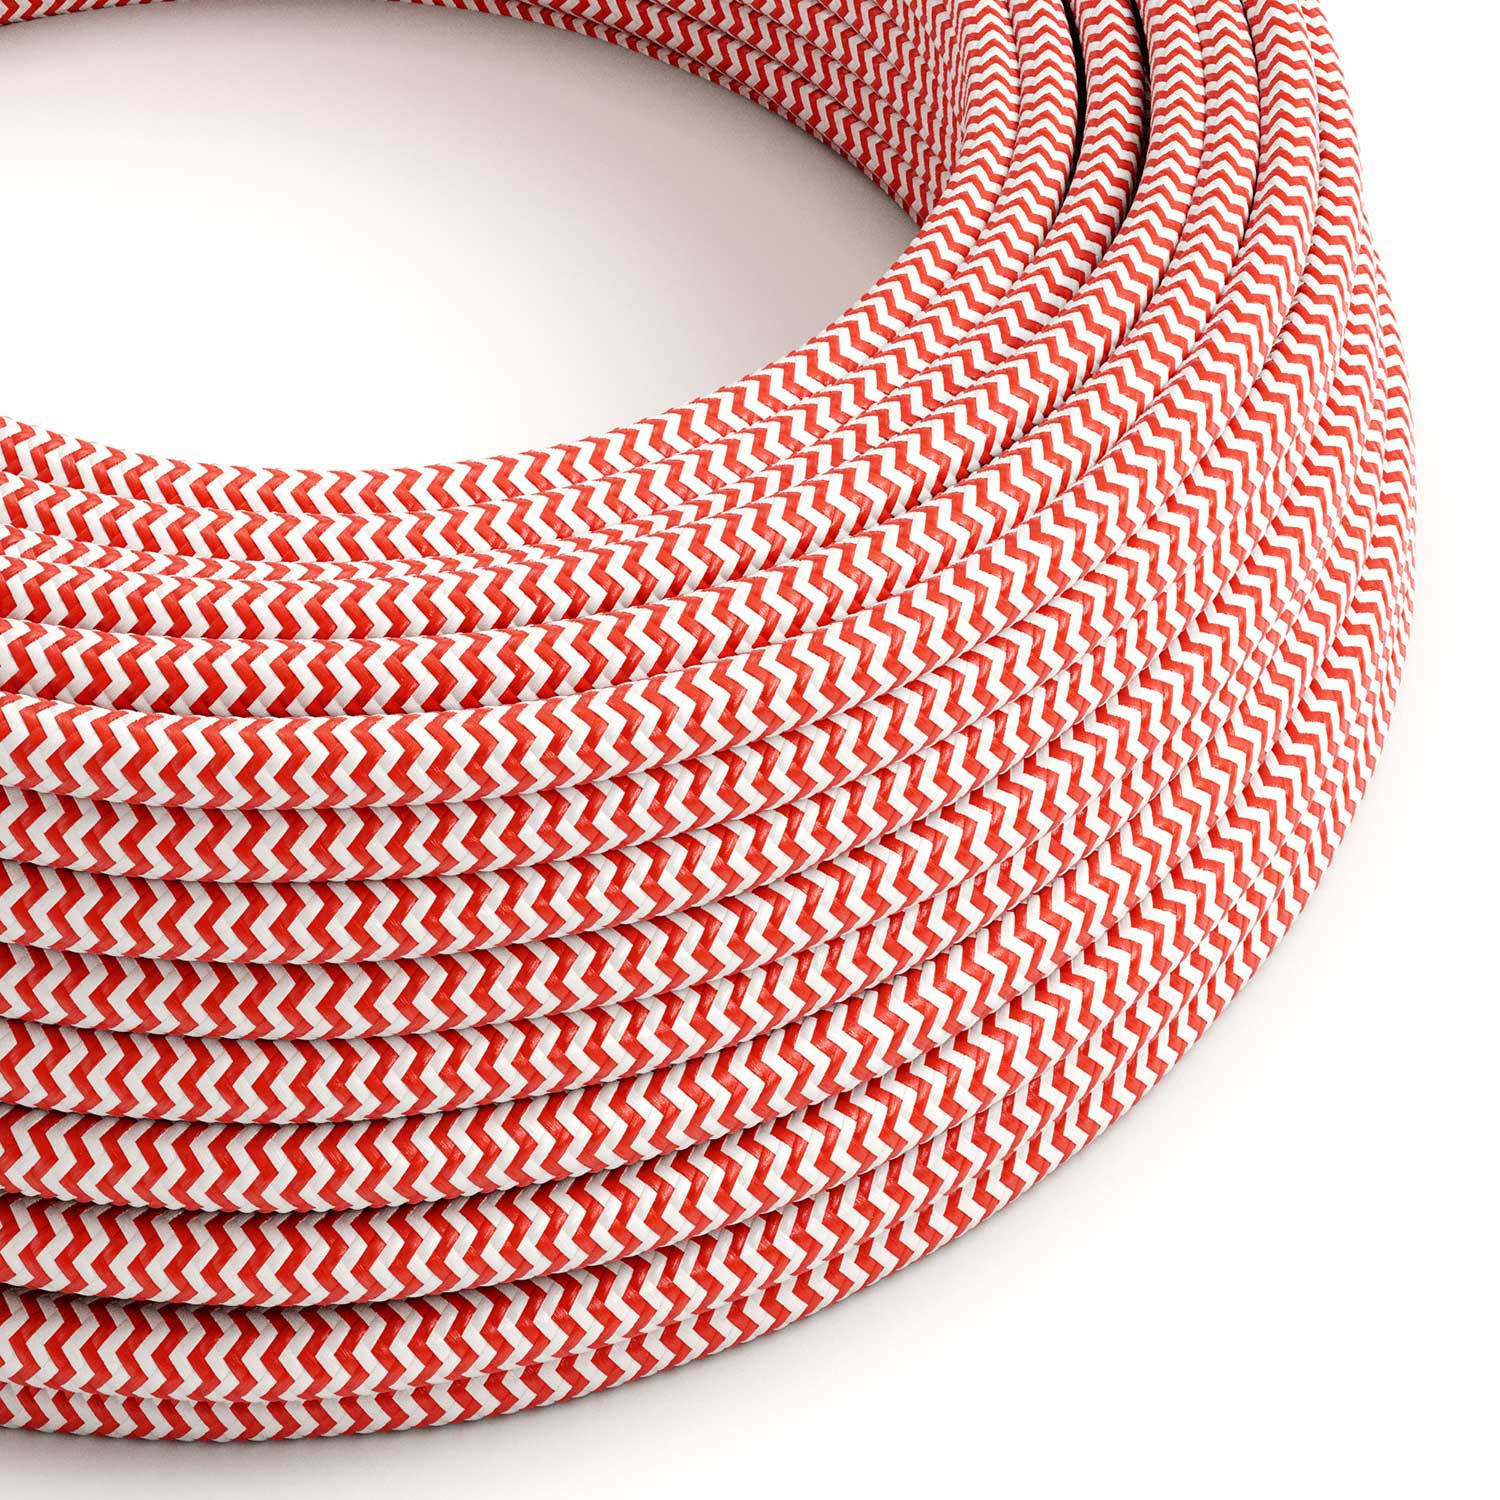 Cavo tessile Rosso Fuoco e Bianco Ottico ZigZag lucido - L'Originale Creative-Cables - RZ09 rotondo 2x0,75mm / 3x0,75mm